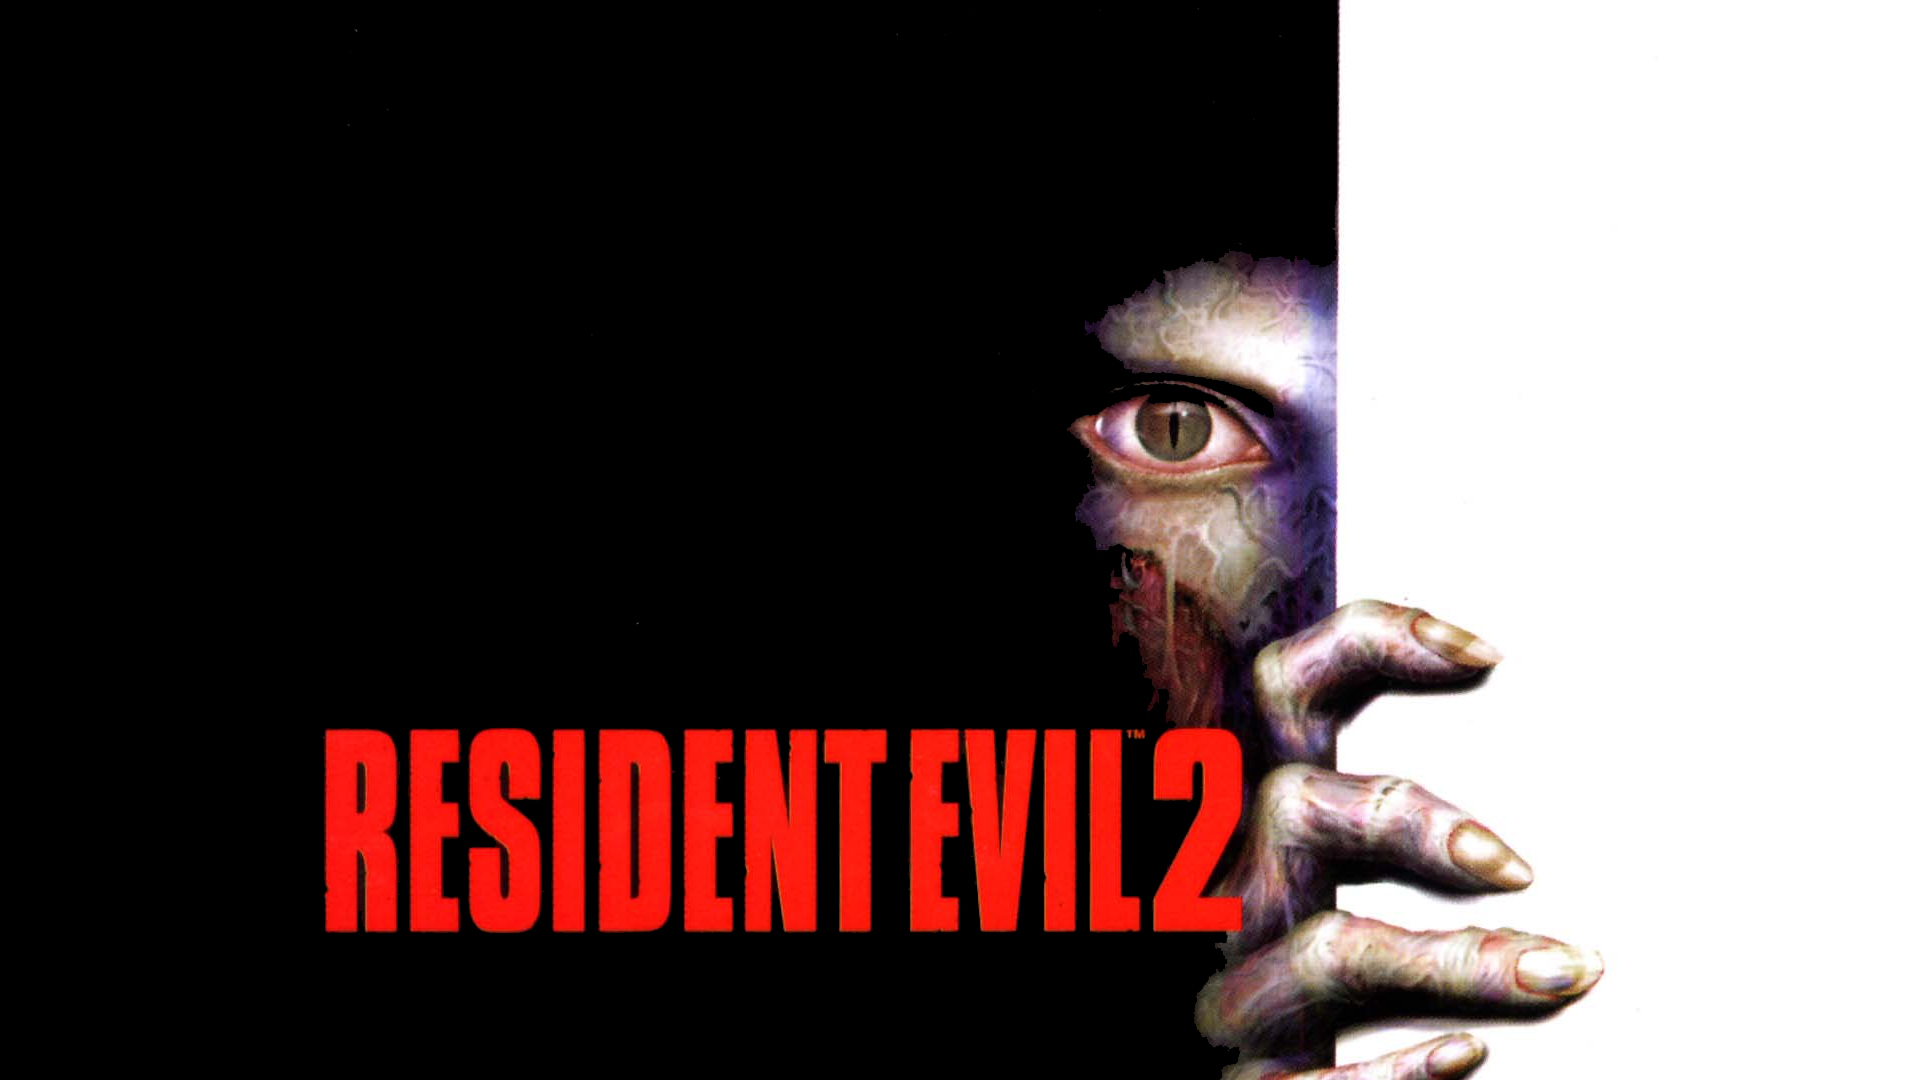 1001 Videojuegos que debes jugar: Resident Evil 2 1